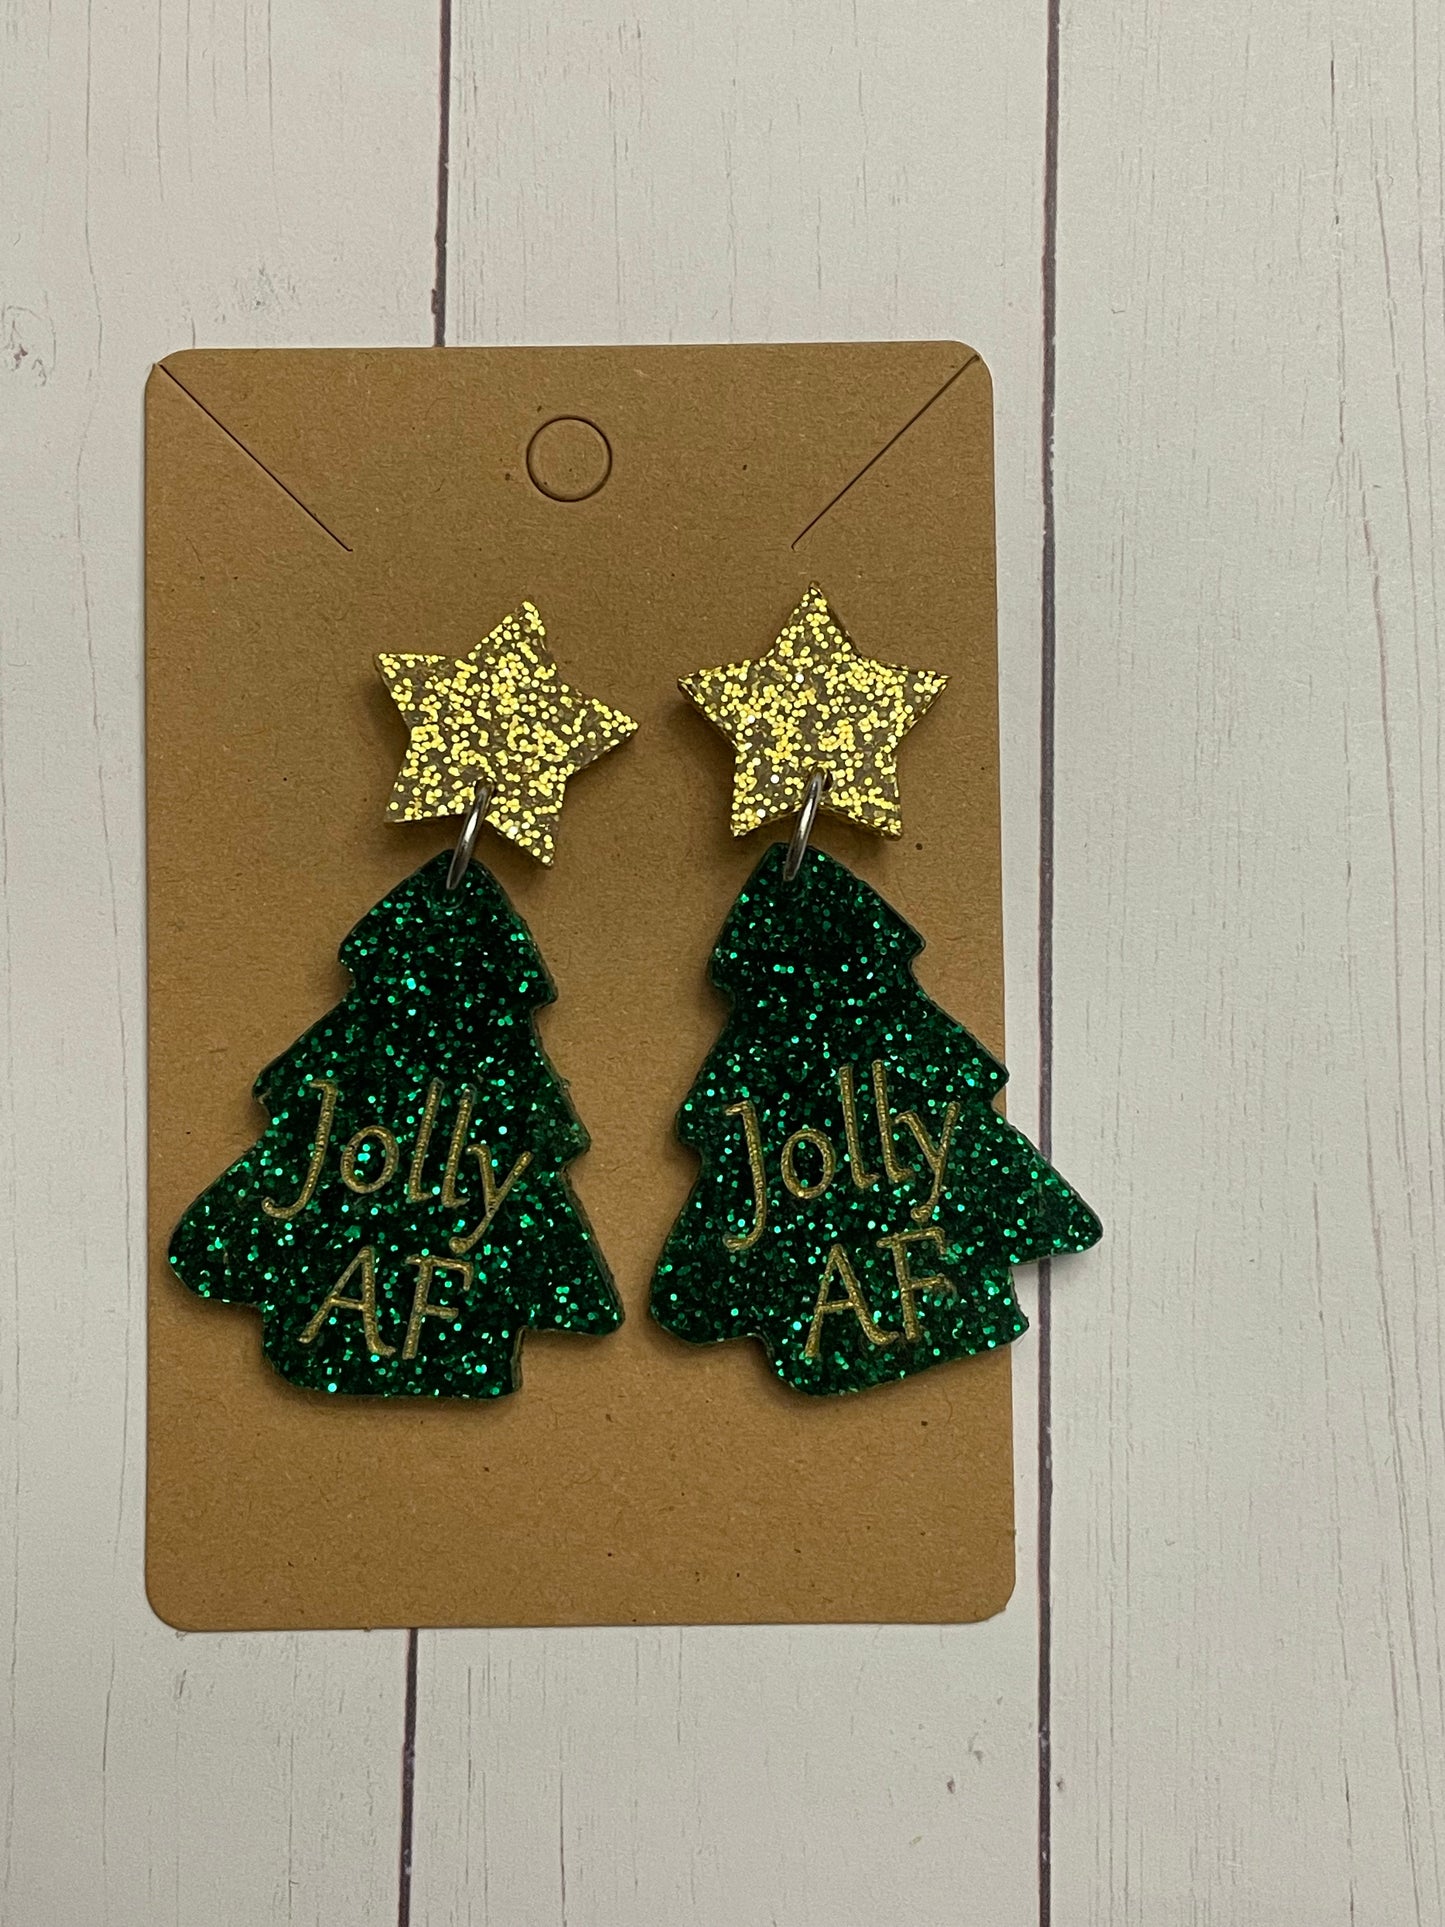 Jolly tree earrings